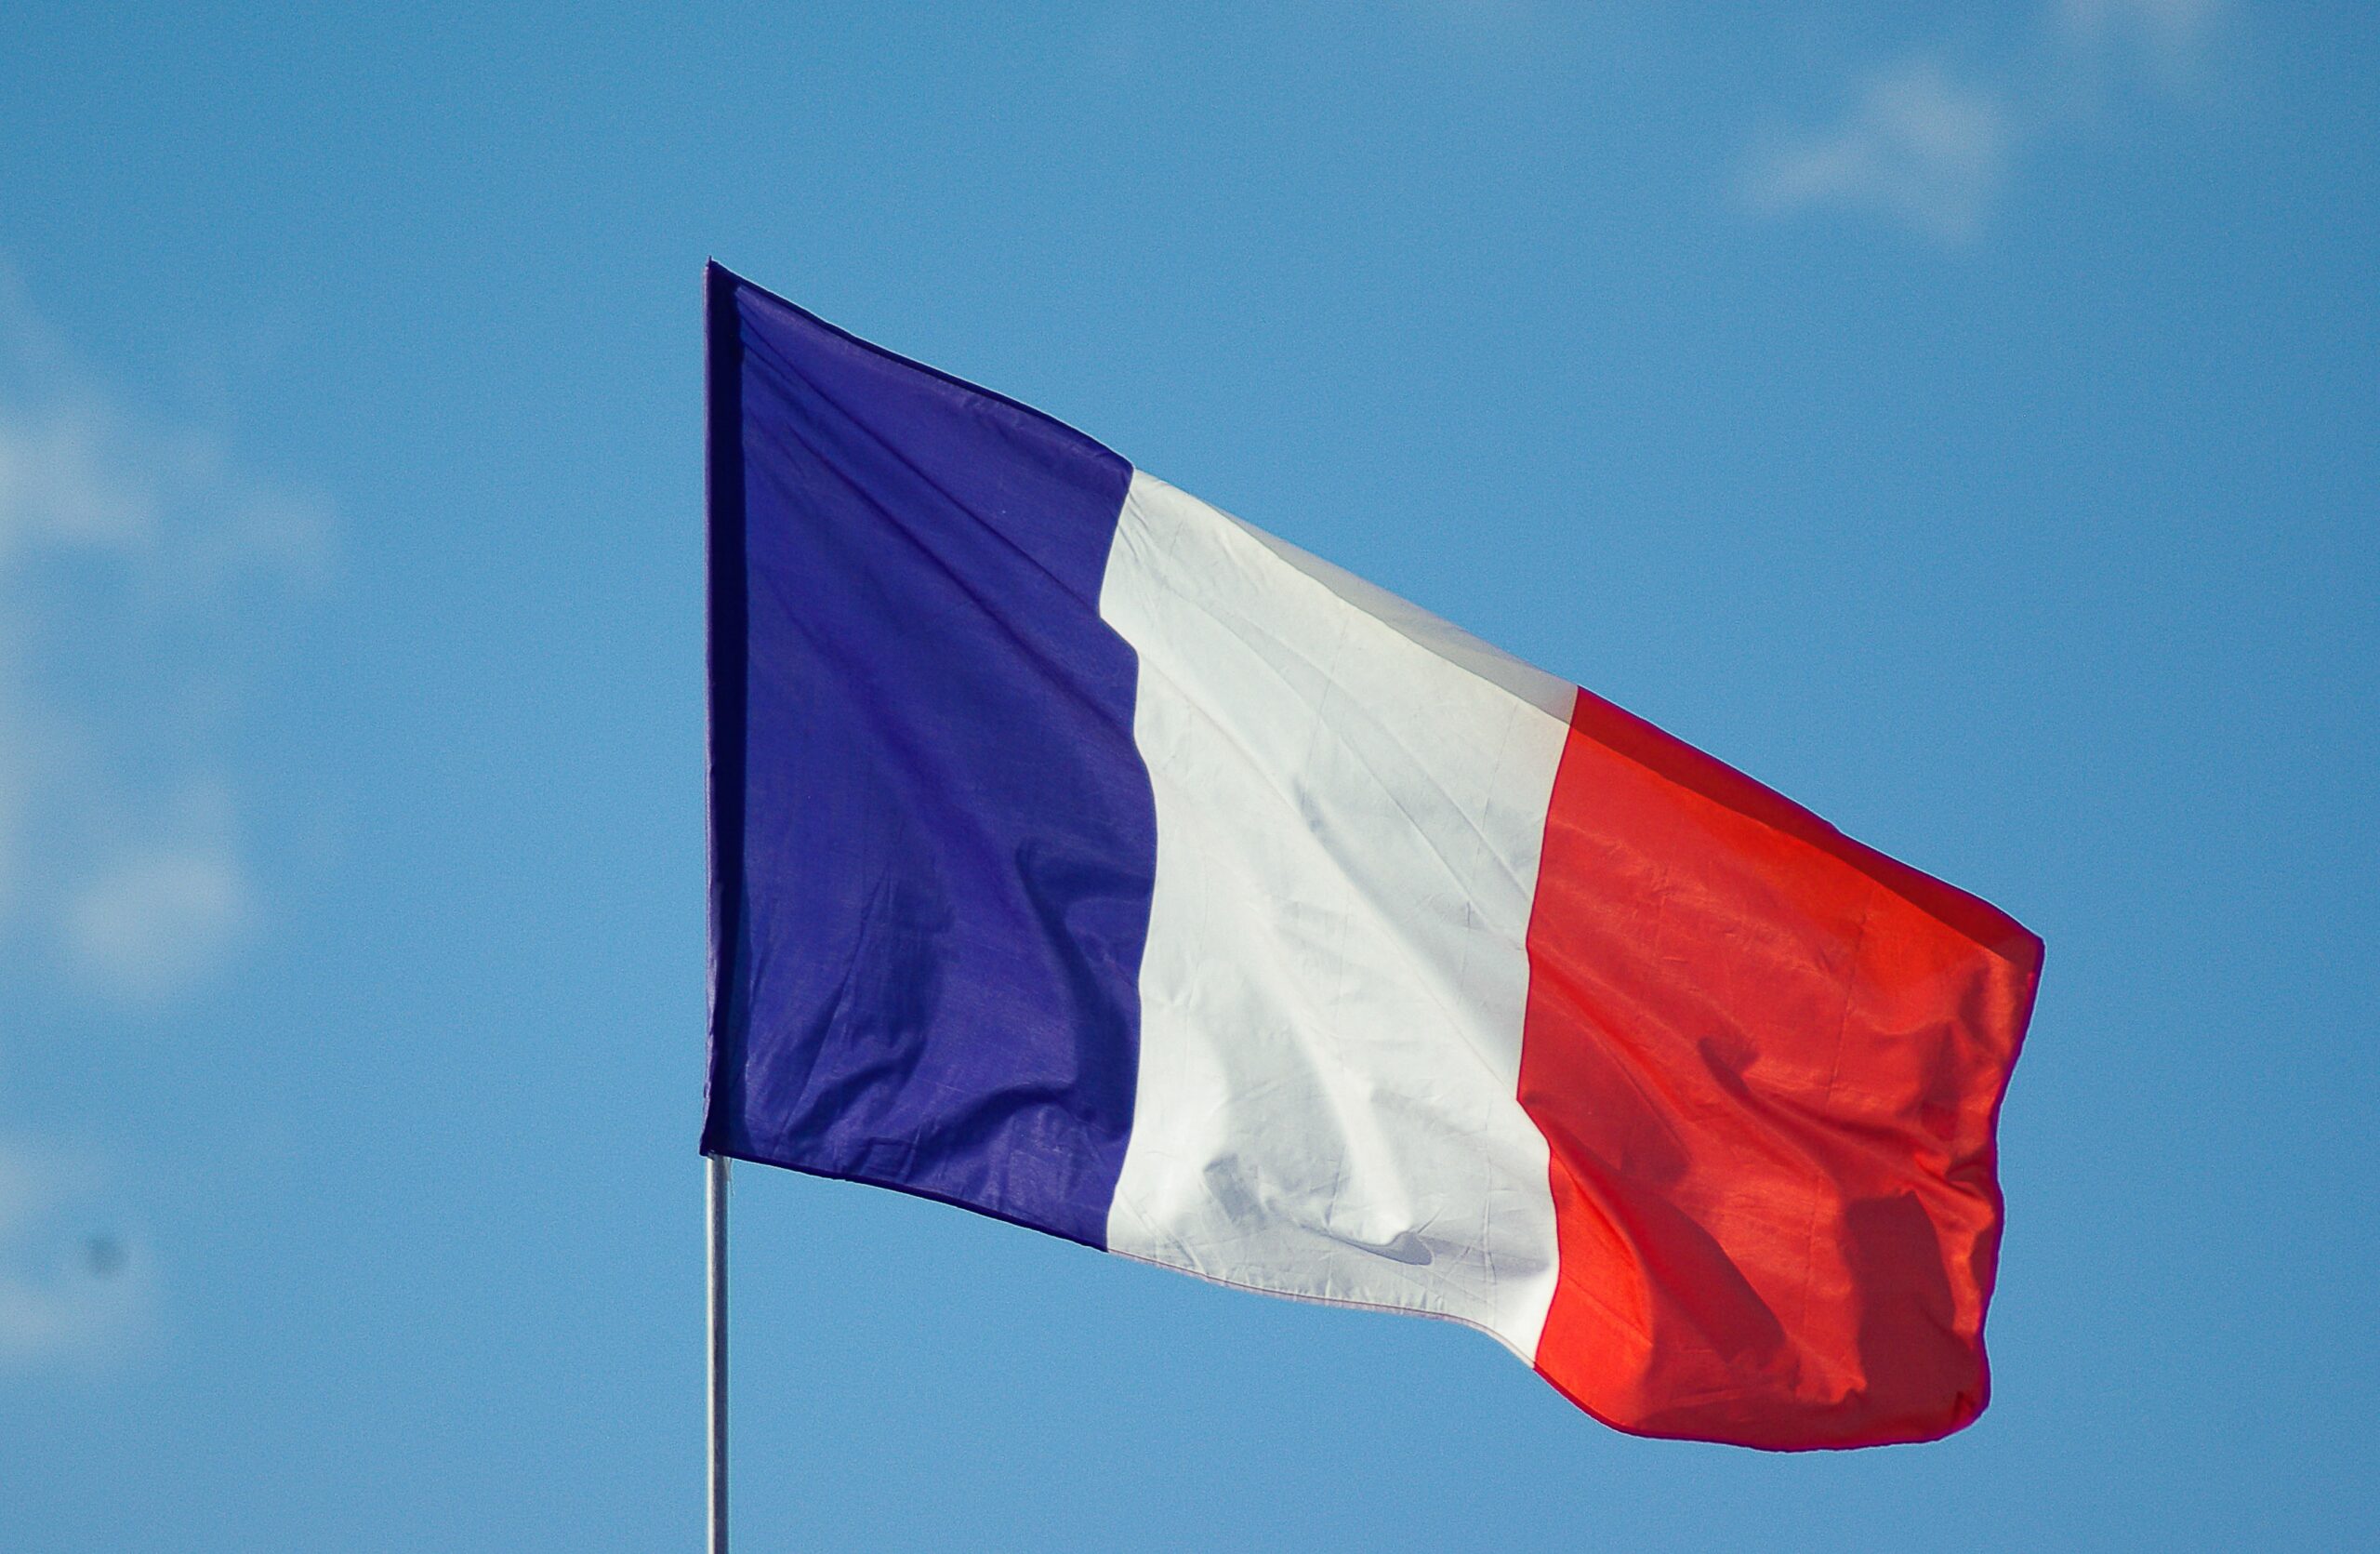 Monde: Претенденты исключают свои кандидатуры с выборов в парламент Франции